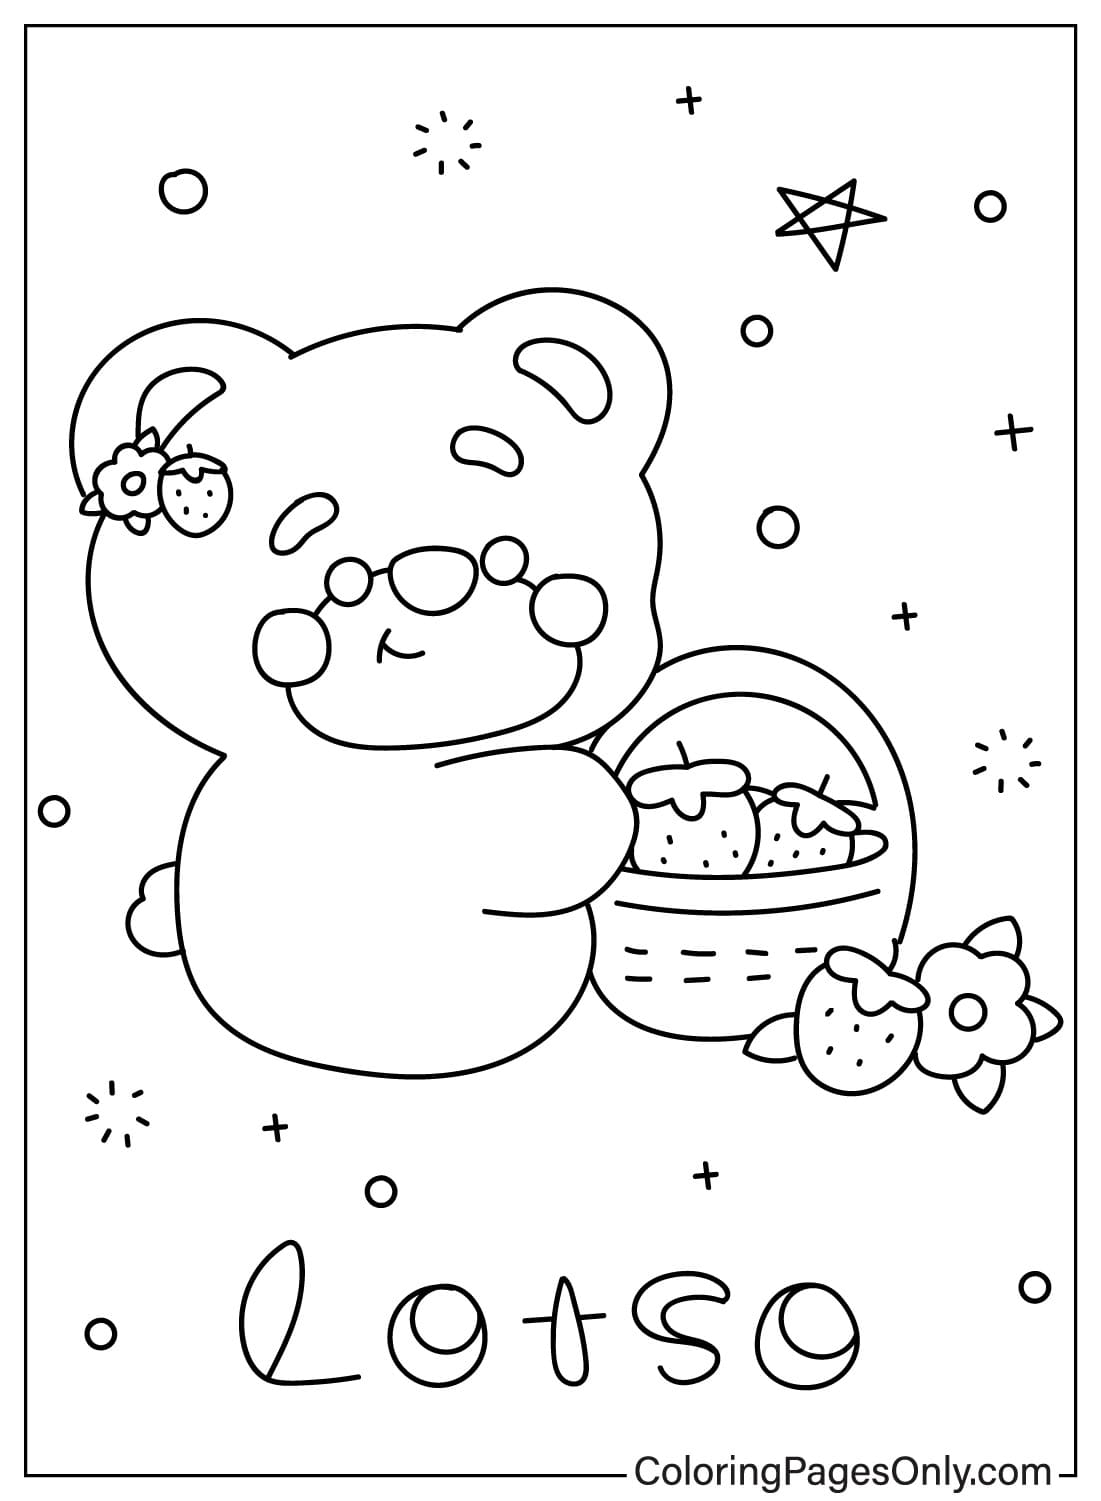 Linda página para colorear del oso Lotso del oso Lotso